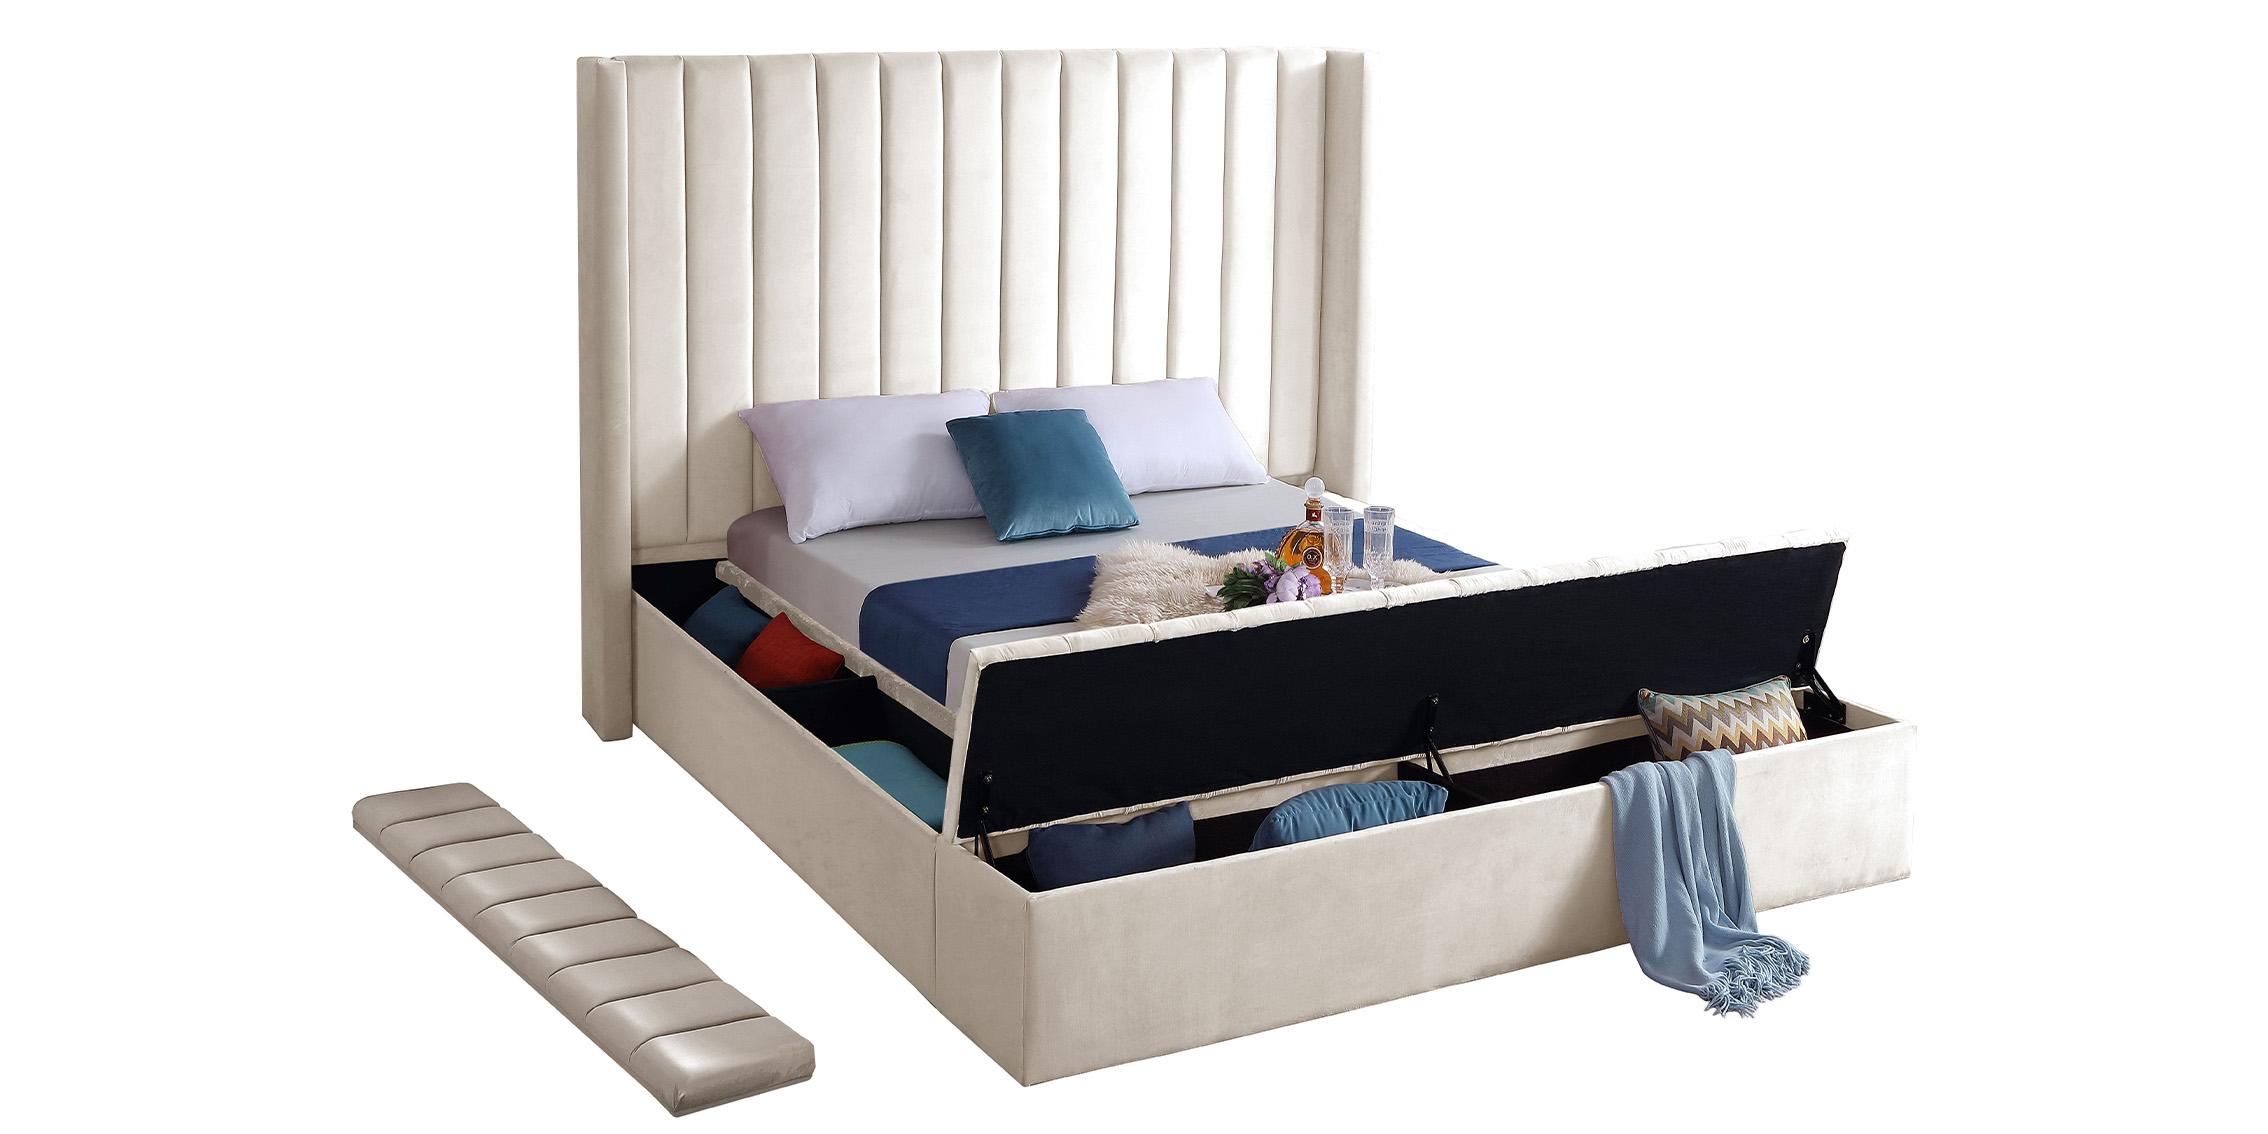 

    
KikiCream-Q Cream Velvet Channel Tufted Storage Queen Bed KIKI Meridian Contemporary Modern
